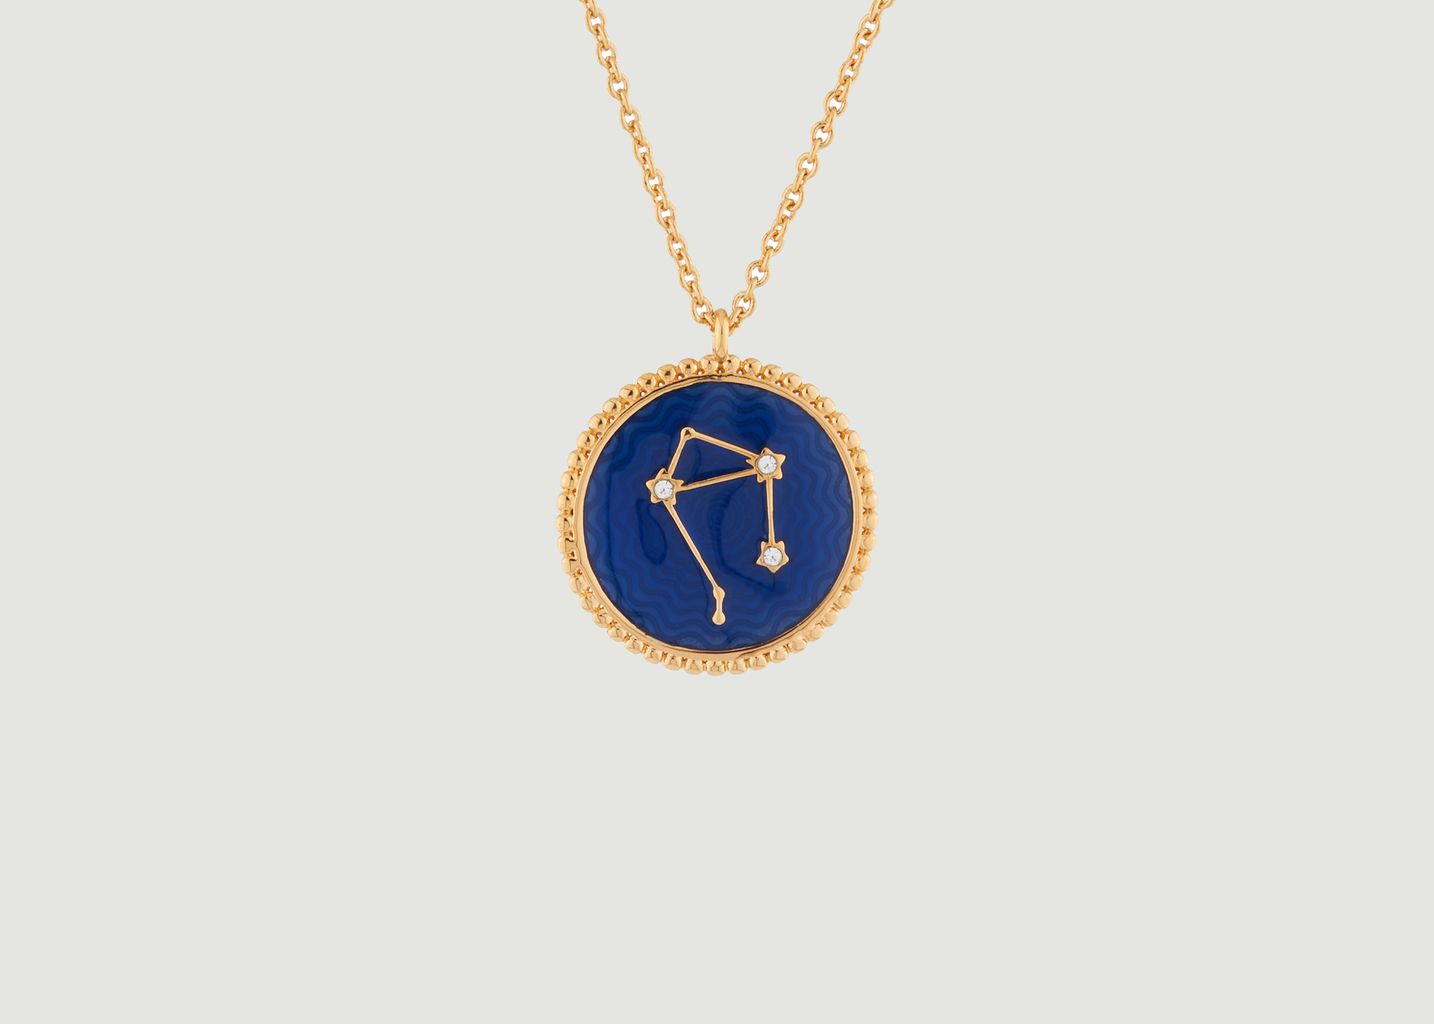 Libra astrological sign necklace with pendant - Les Néréides